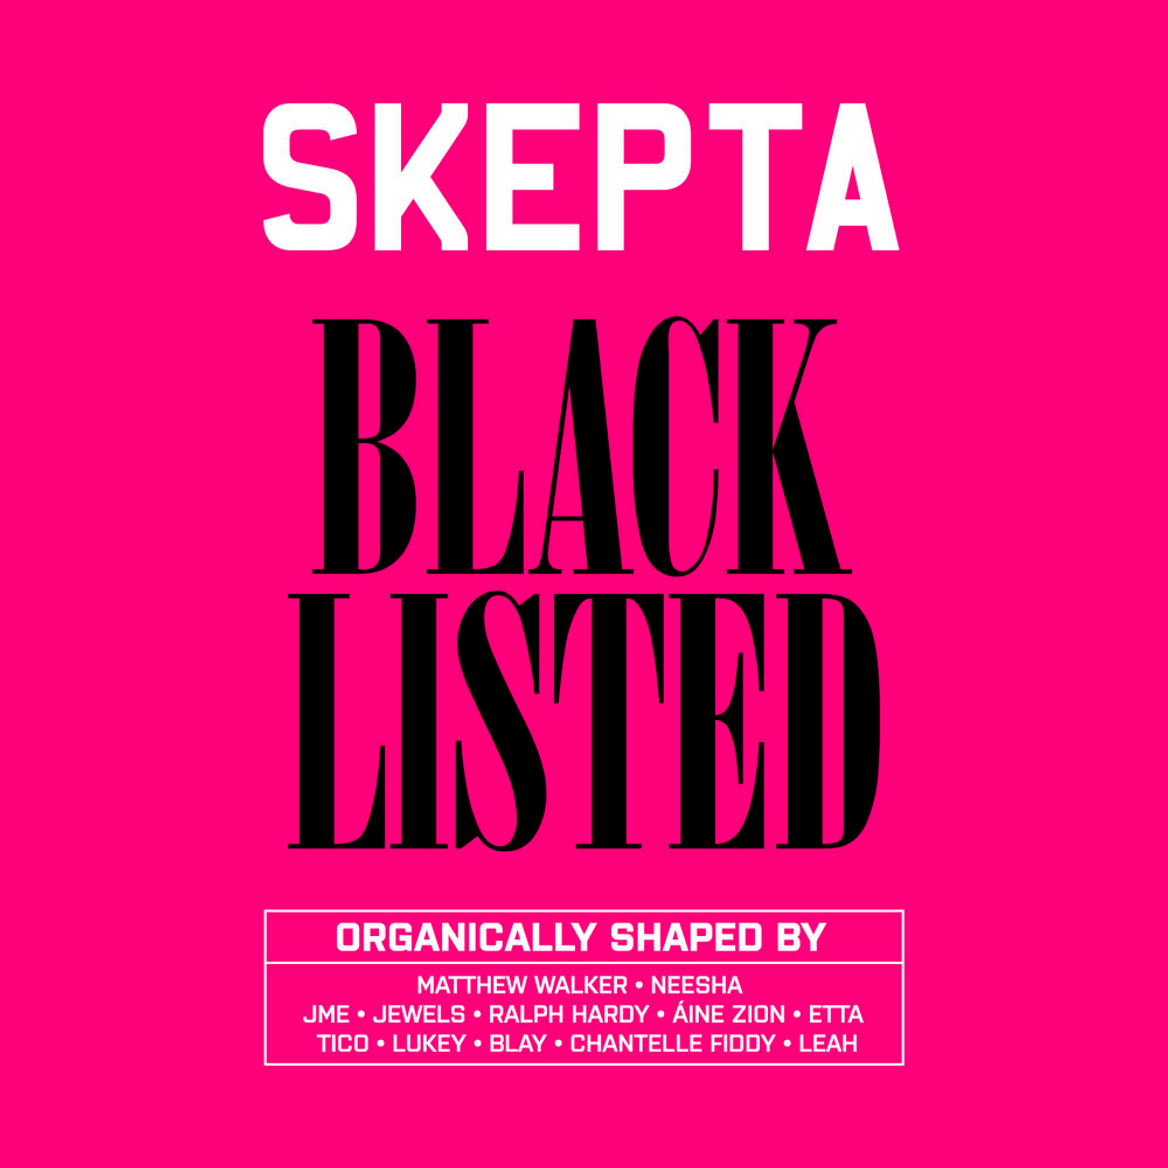 skepta-blacklisted